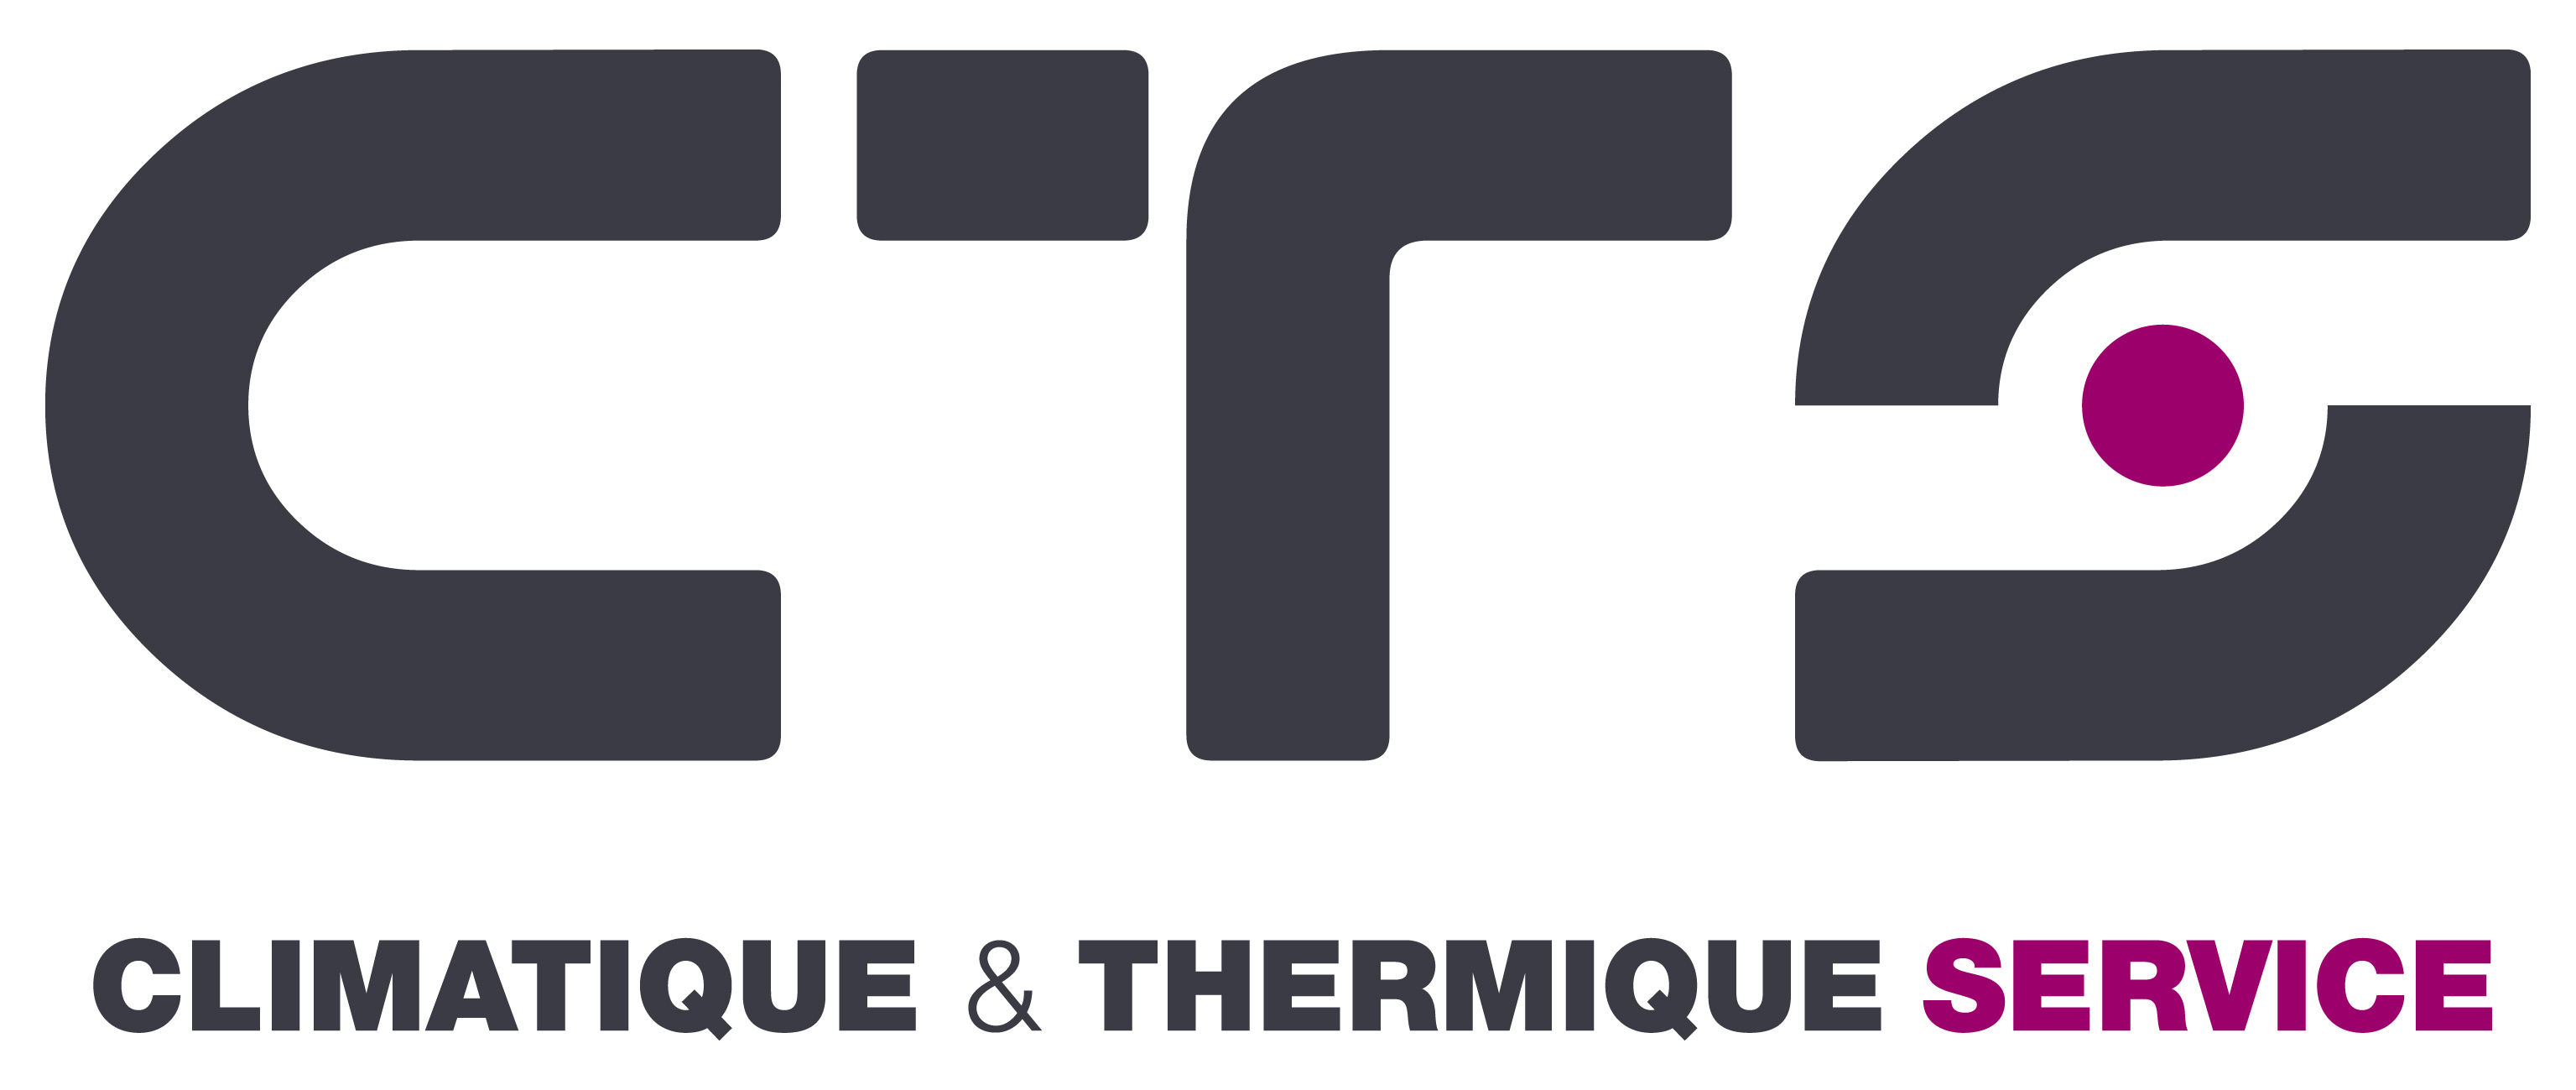 CTS - Climatique et Thermique Service